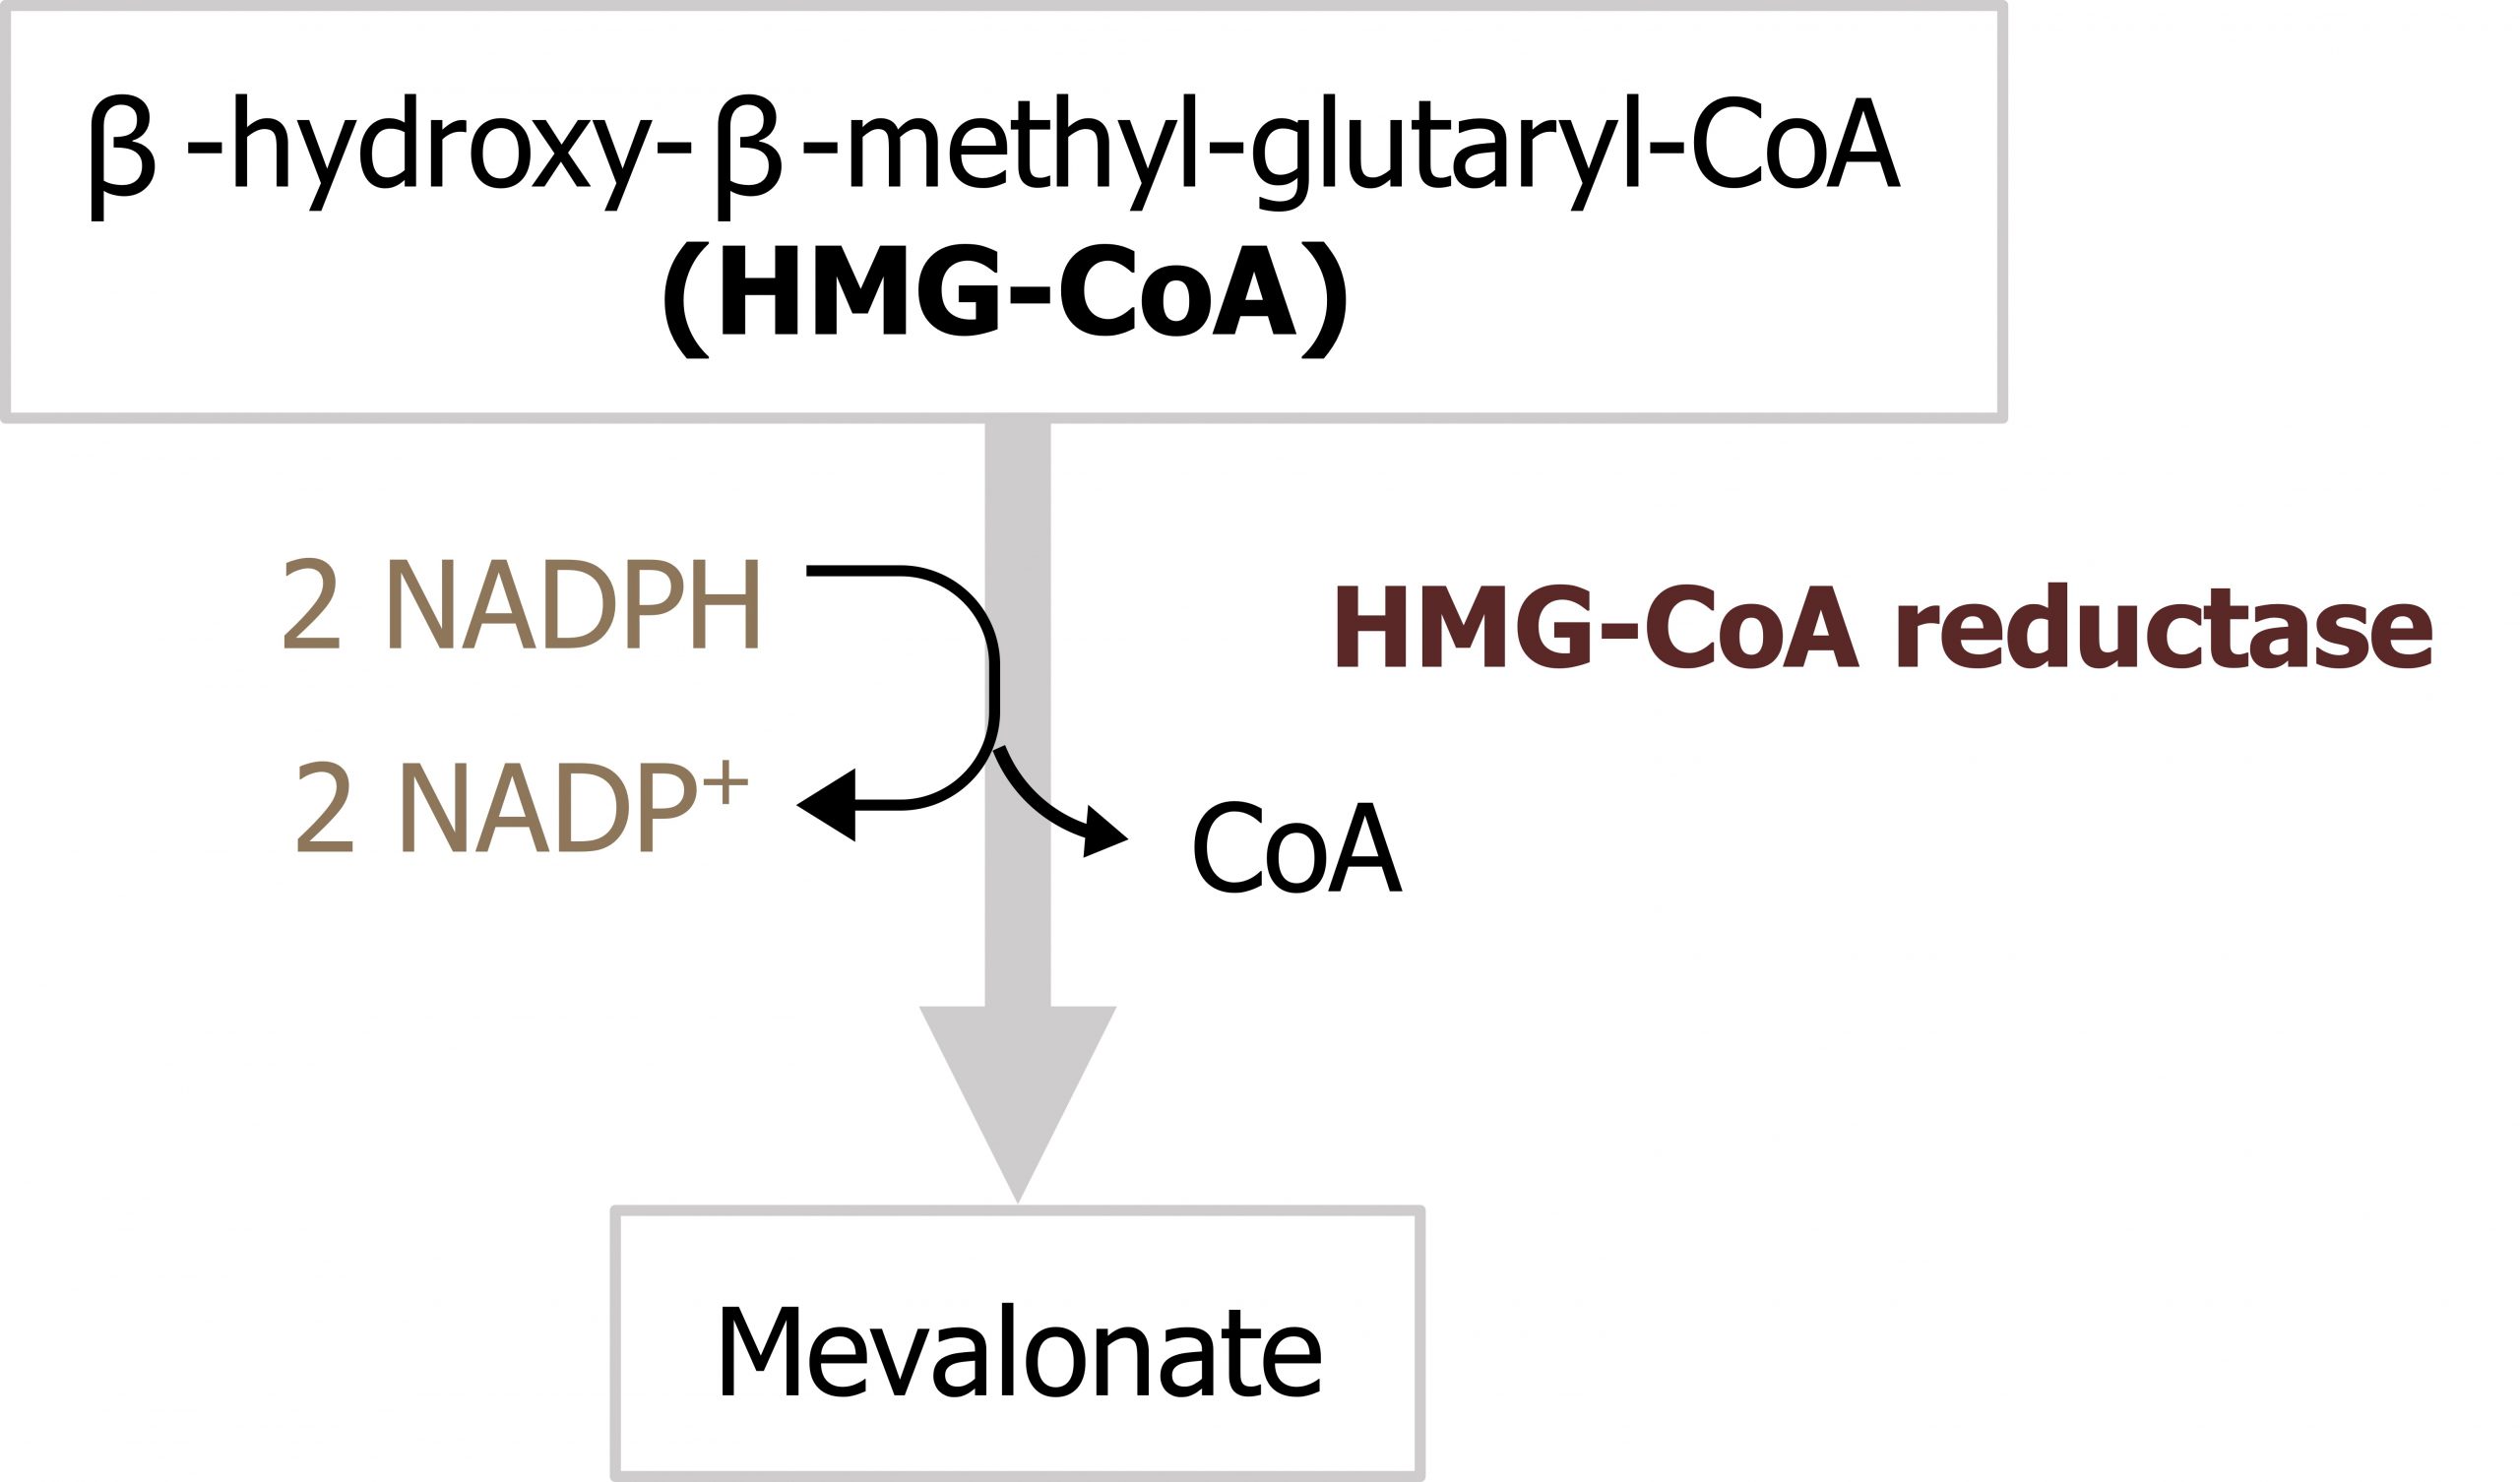 β-hydroxy-β-methyl-glutaryl-CoA (HMG-CoA) arrow with enzyme HMG-CoA reductase and 2 NADPH arrow 2 NADP+ and loss of CoA to mevalonate.